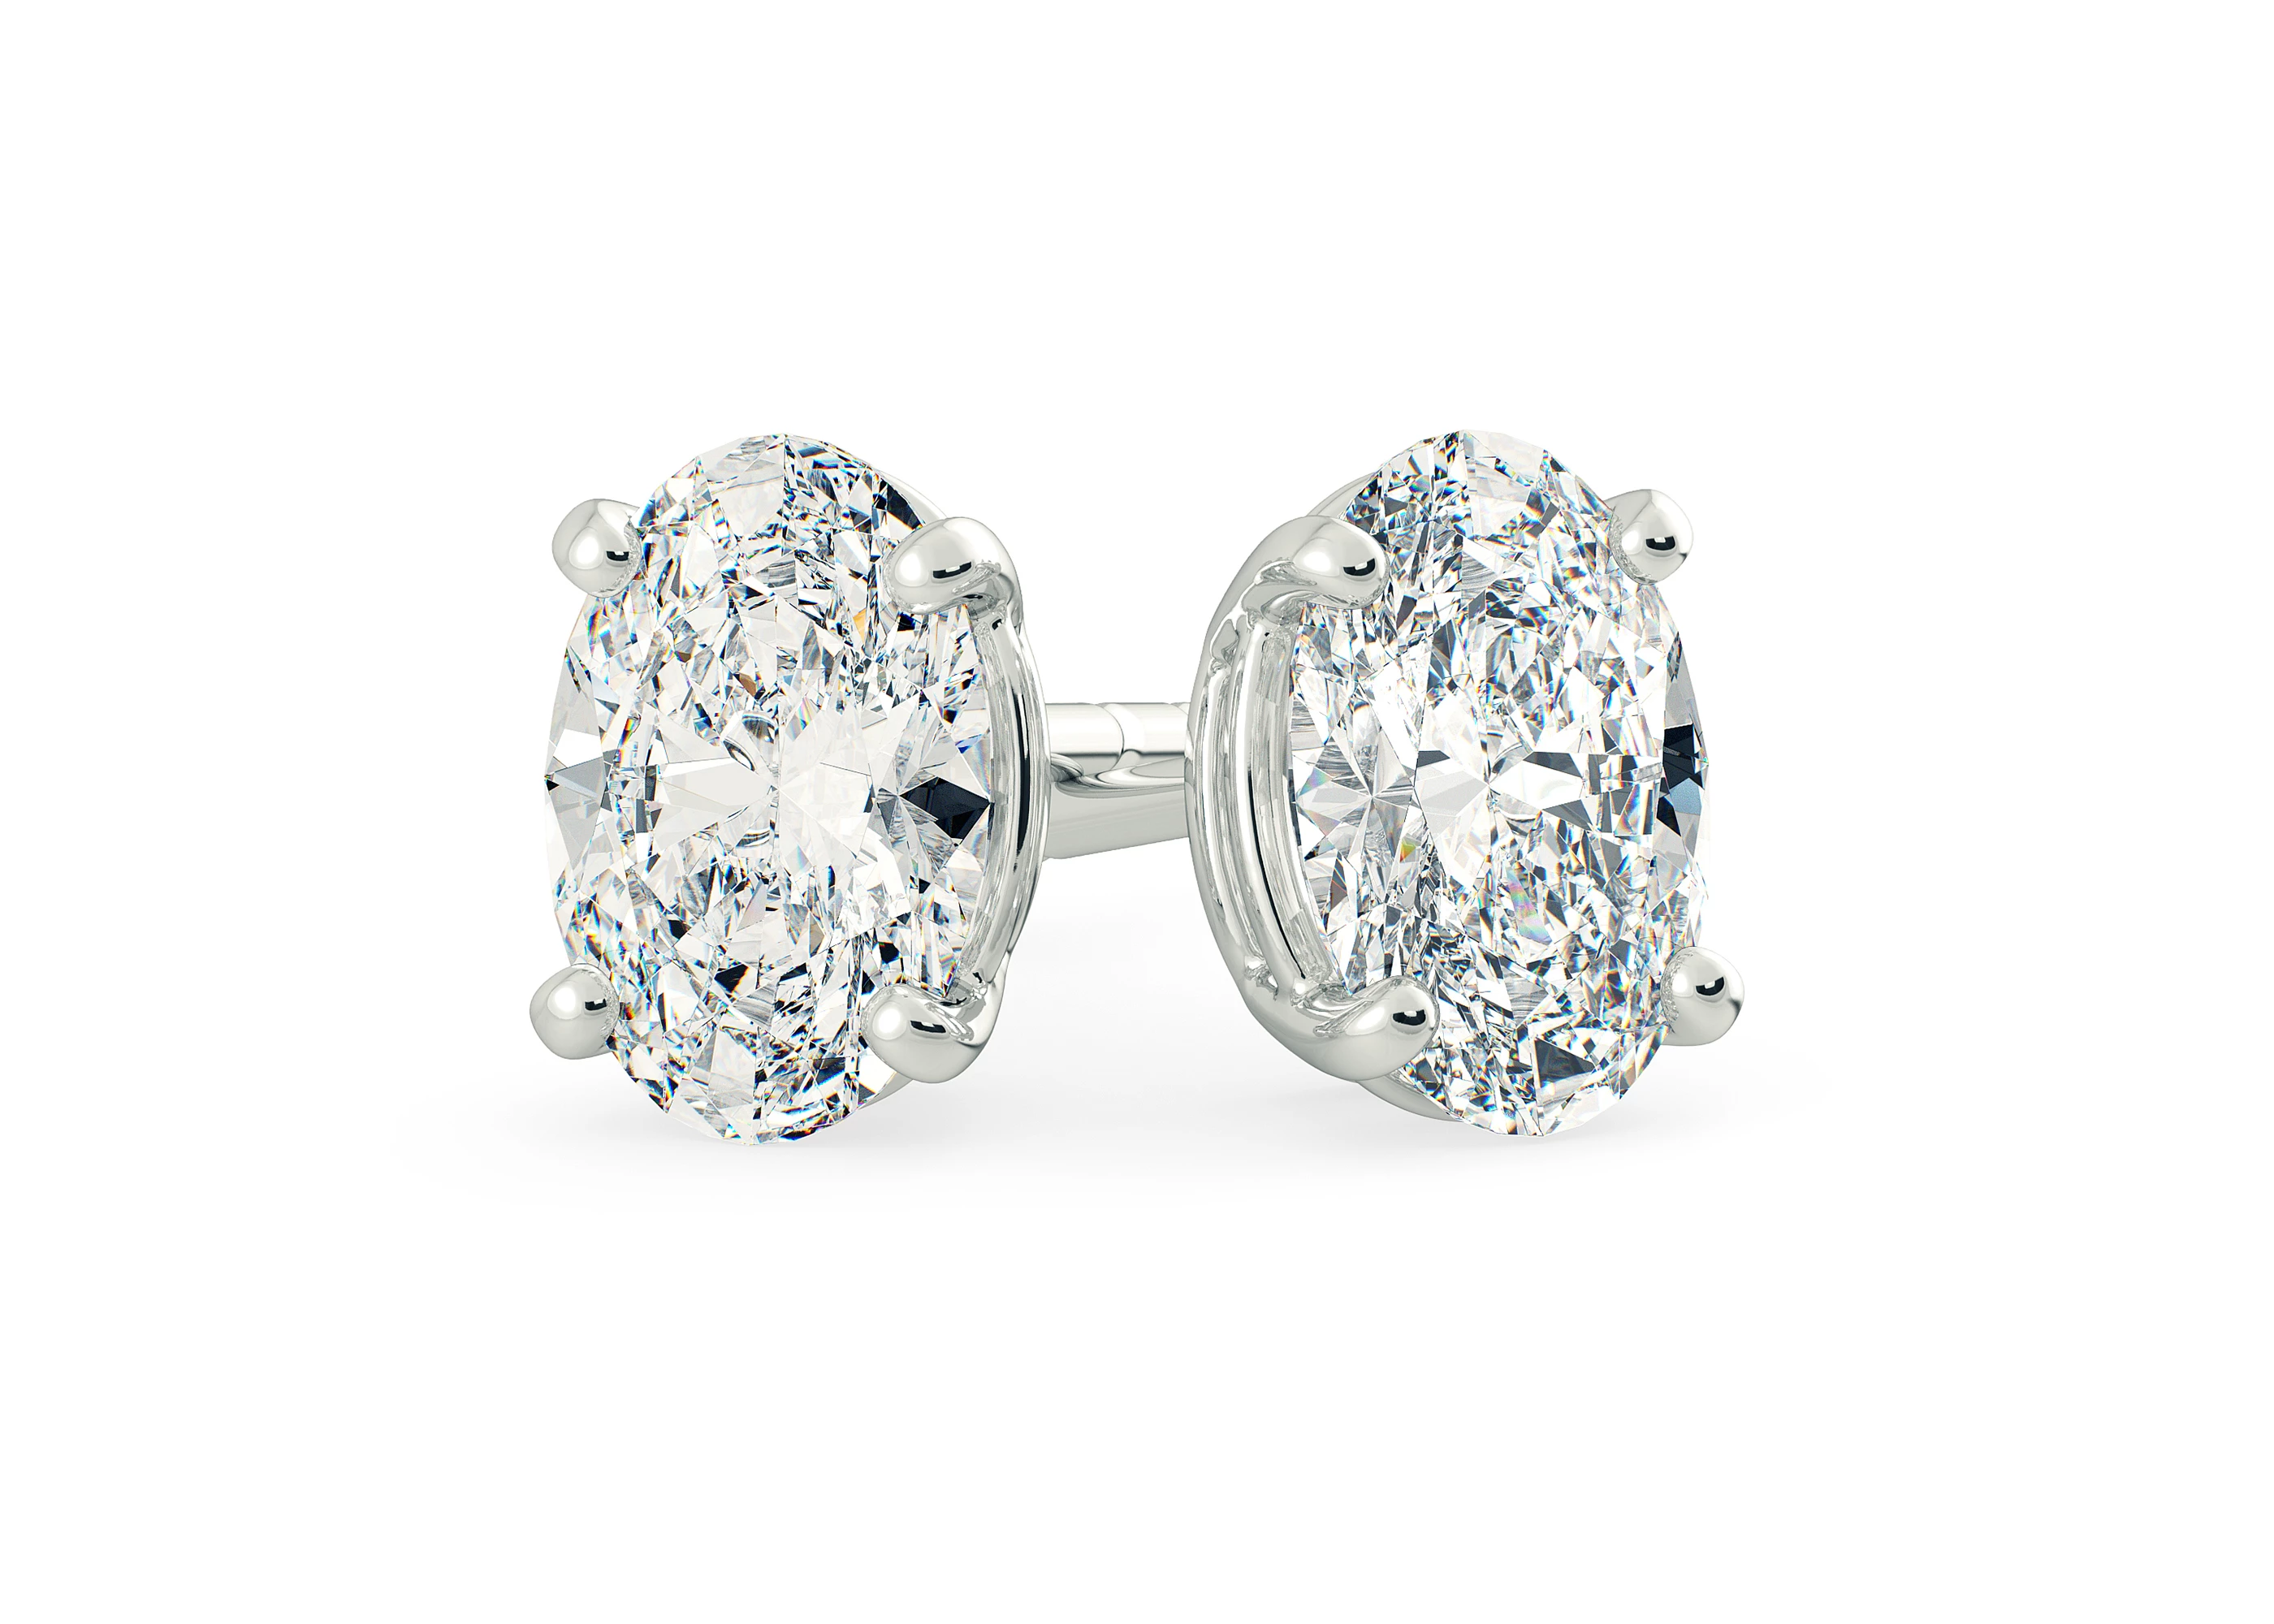 Half Carat Oval Diamond Stud Earrings in 18K White Gold